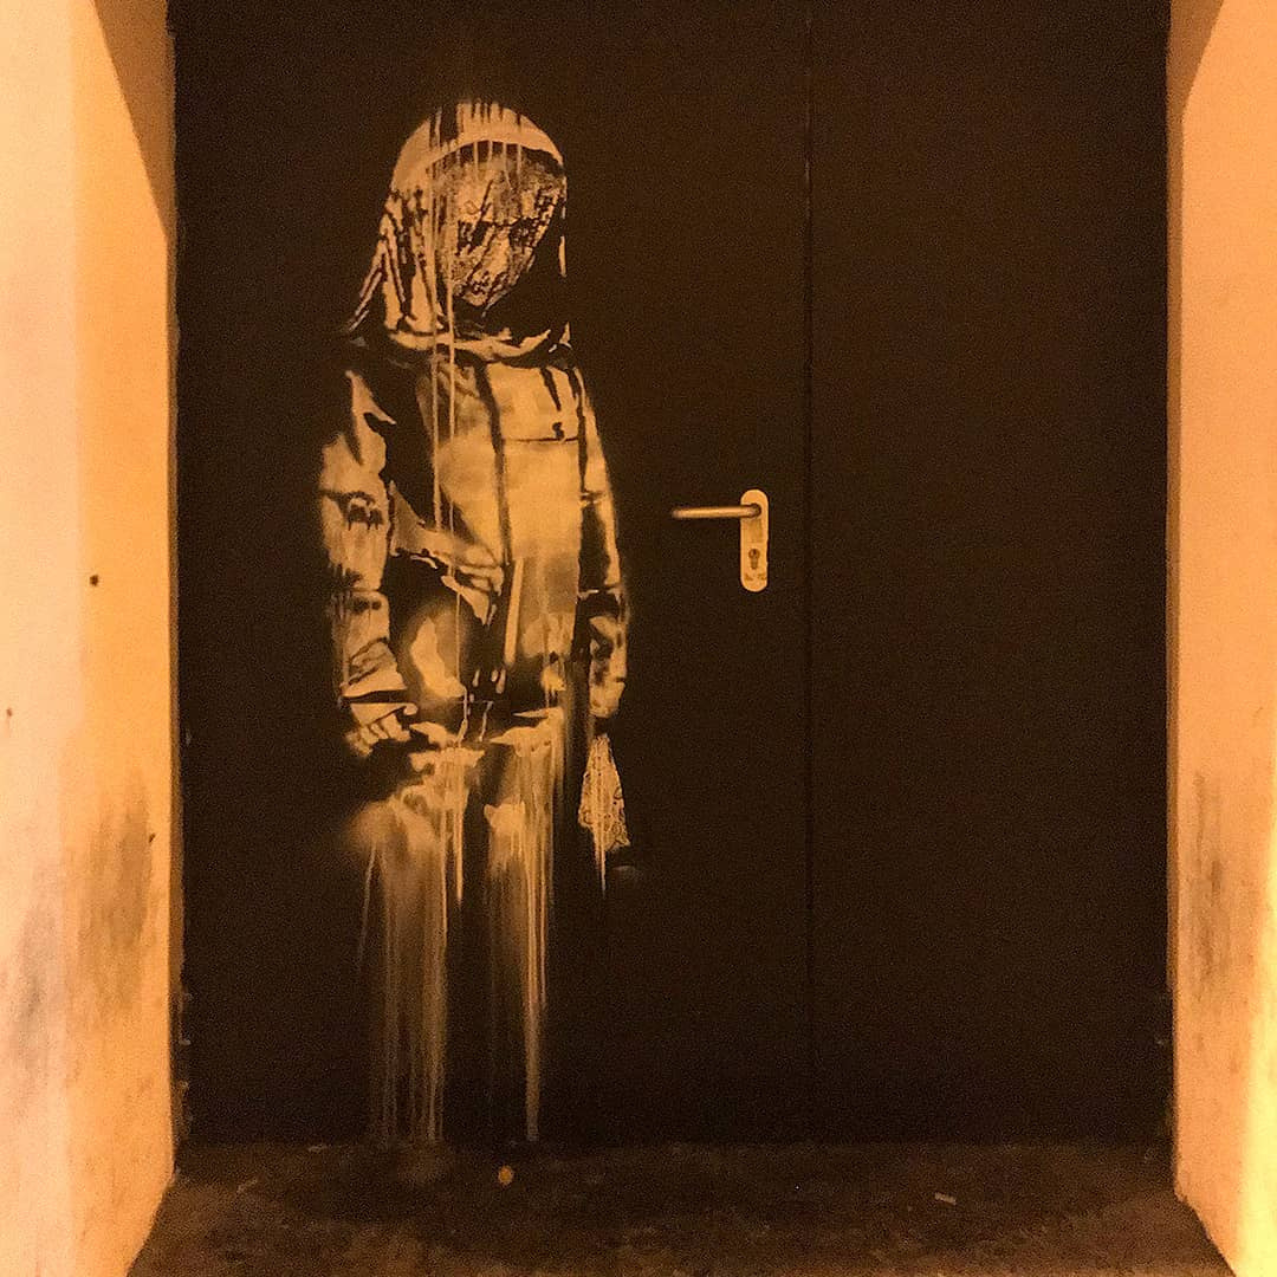 Roban la última obra de Banksy en Londres